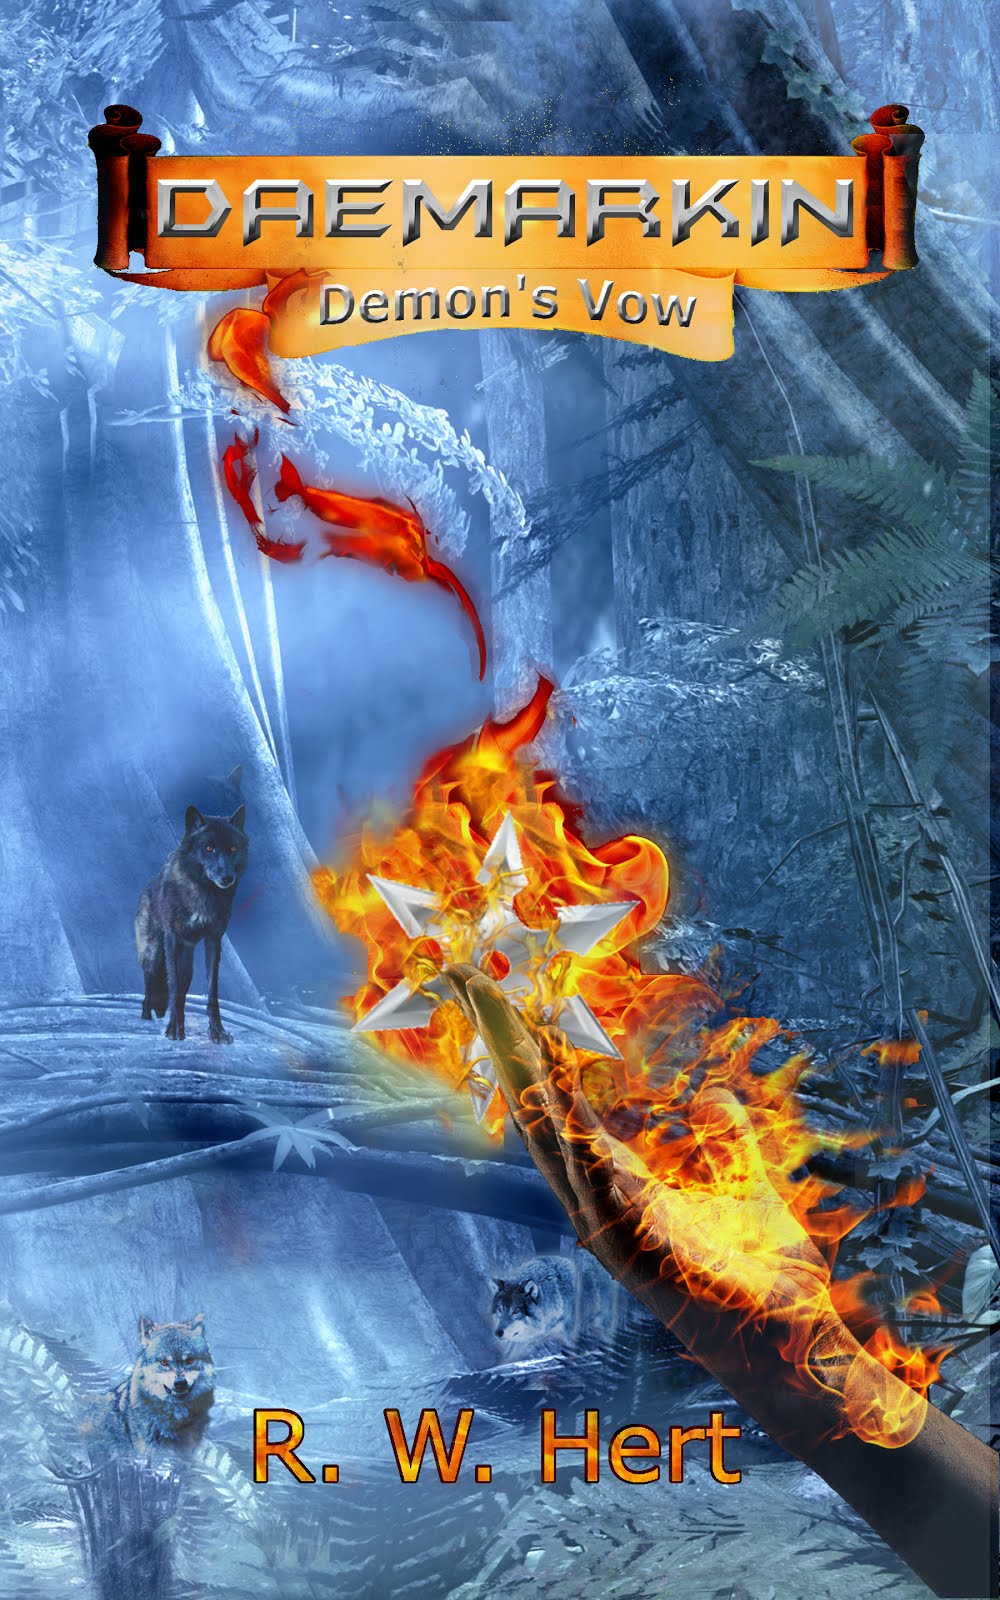 Daemarkin: Demon's Vow